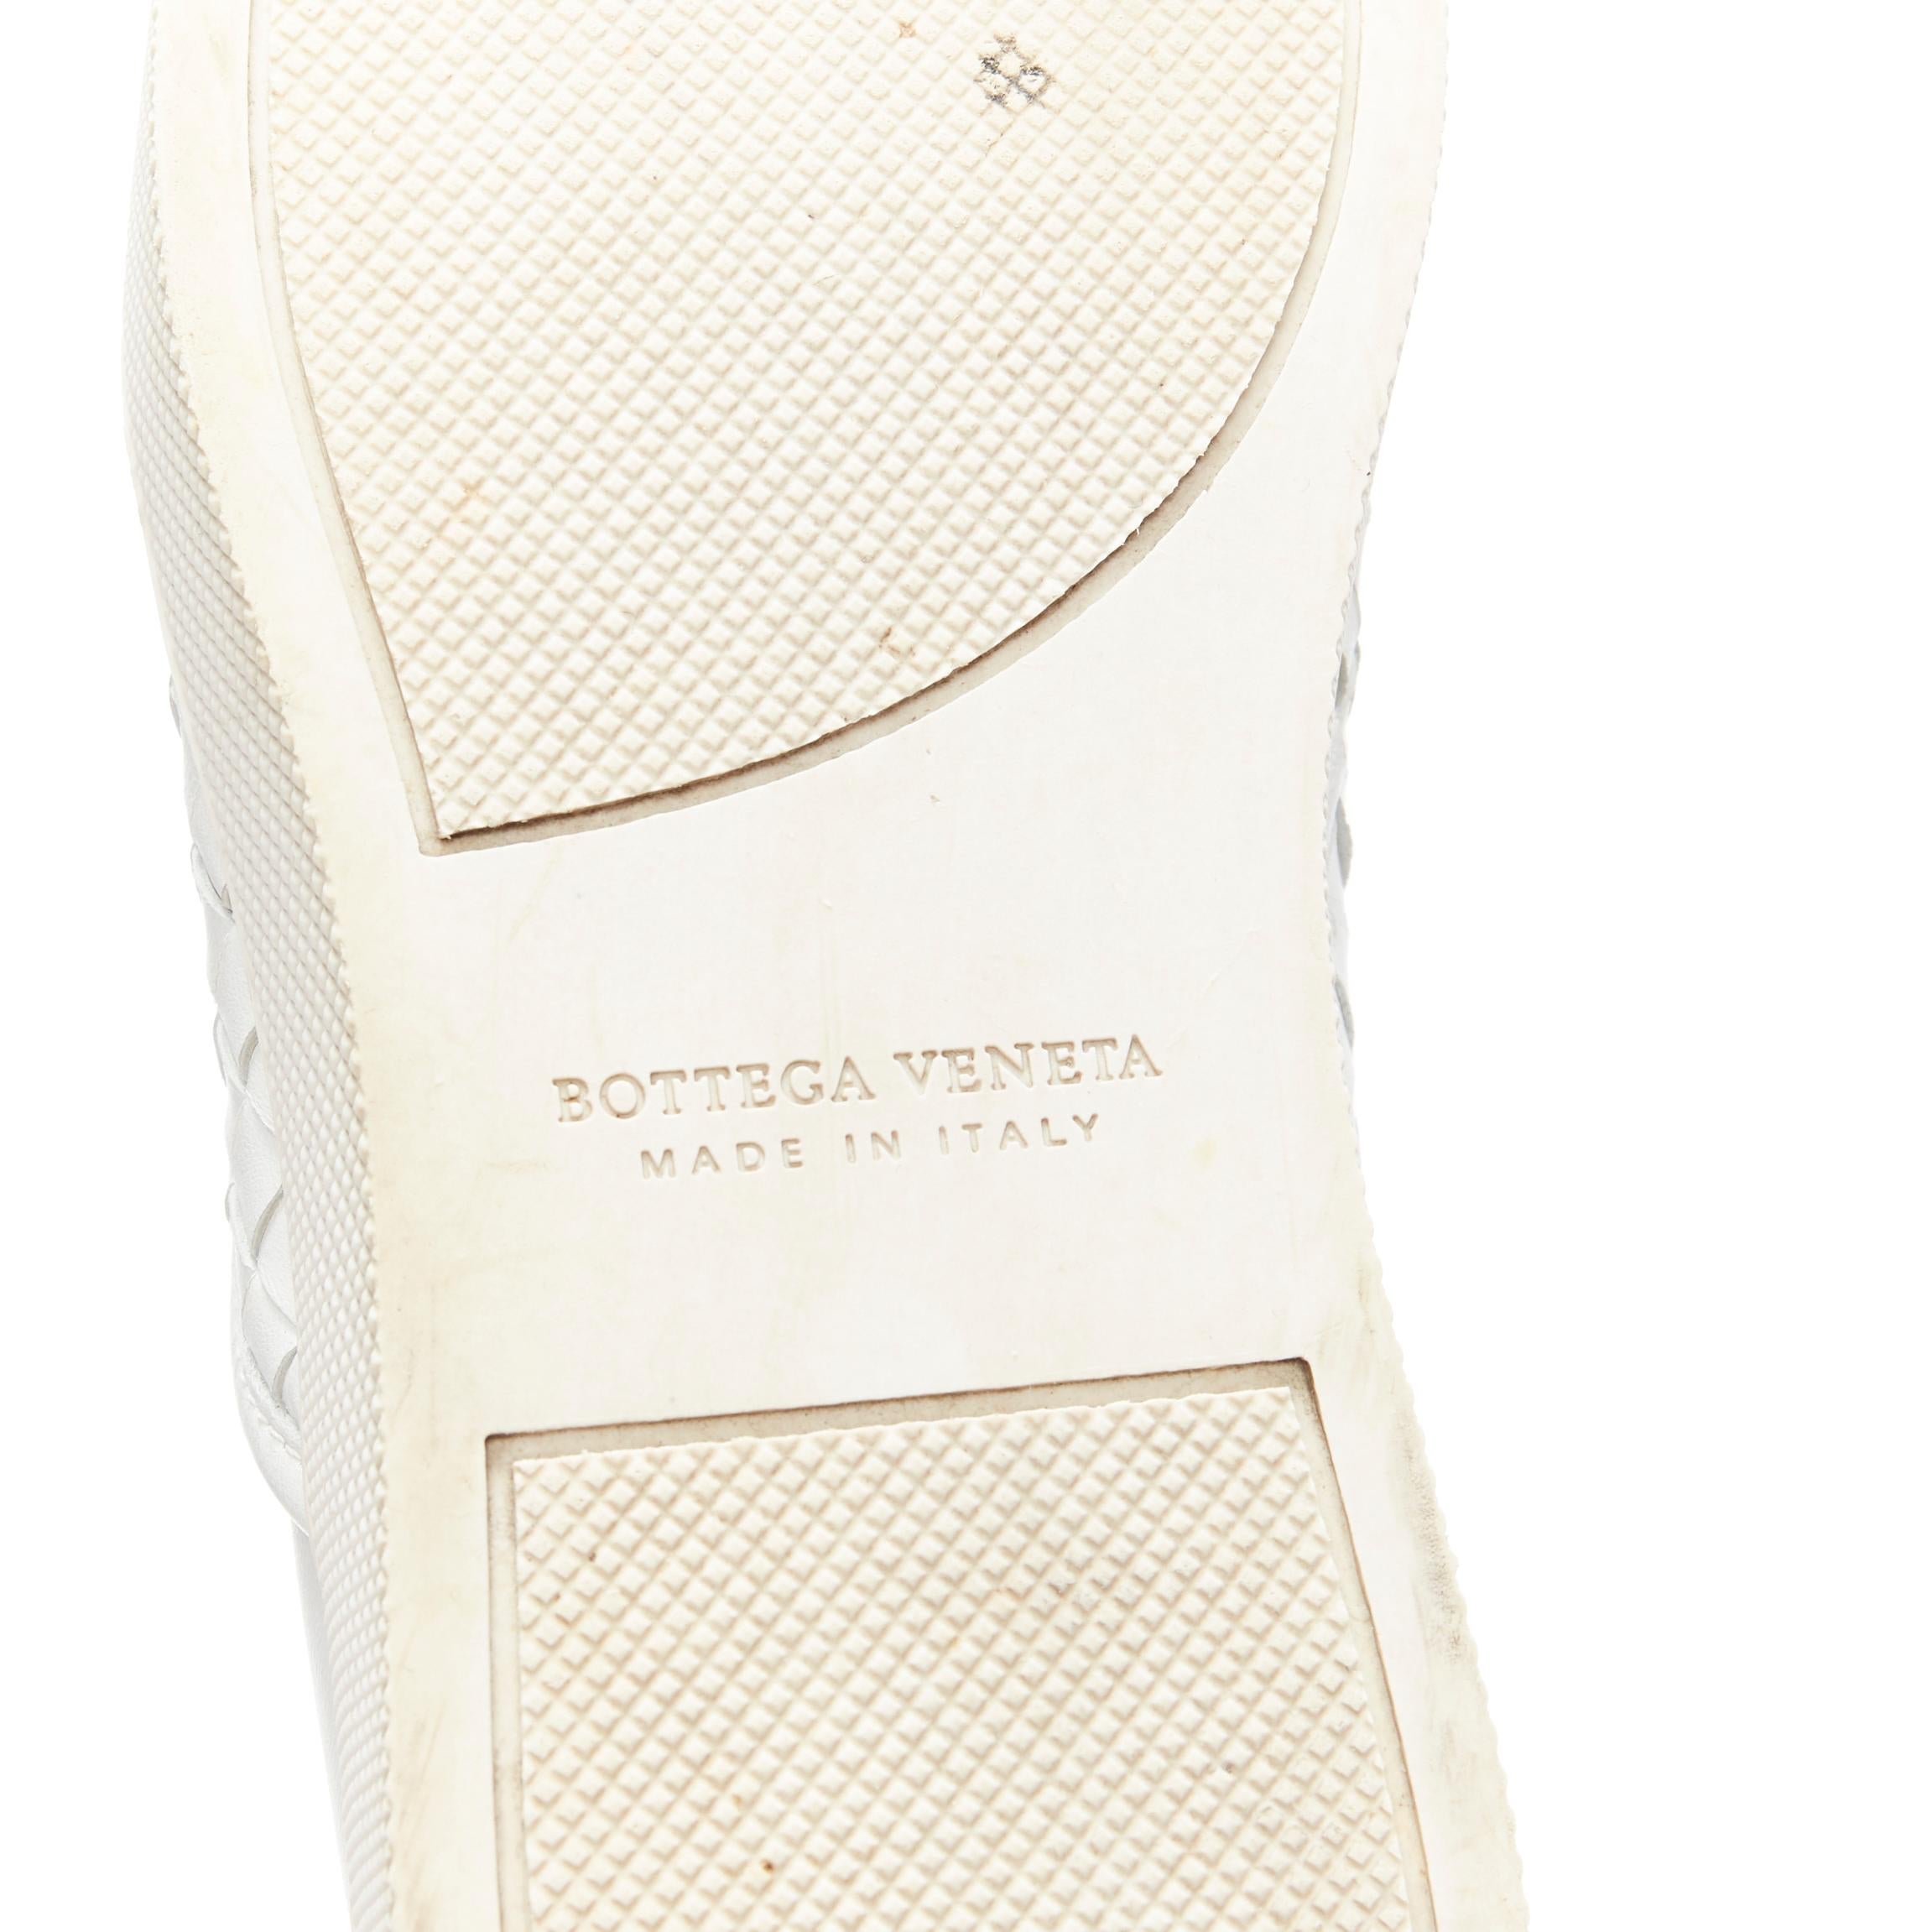 BOTTEGA VENETA white intrecciato woven leather round toe skate shoes EU37.5 4